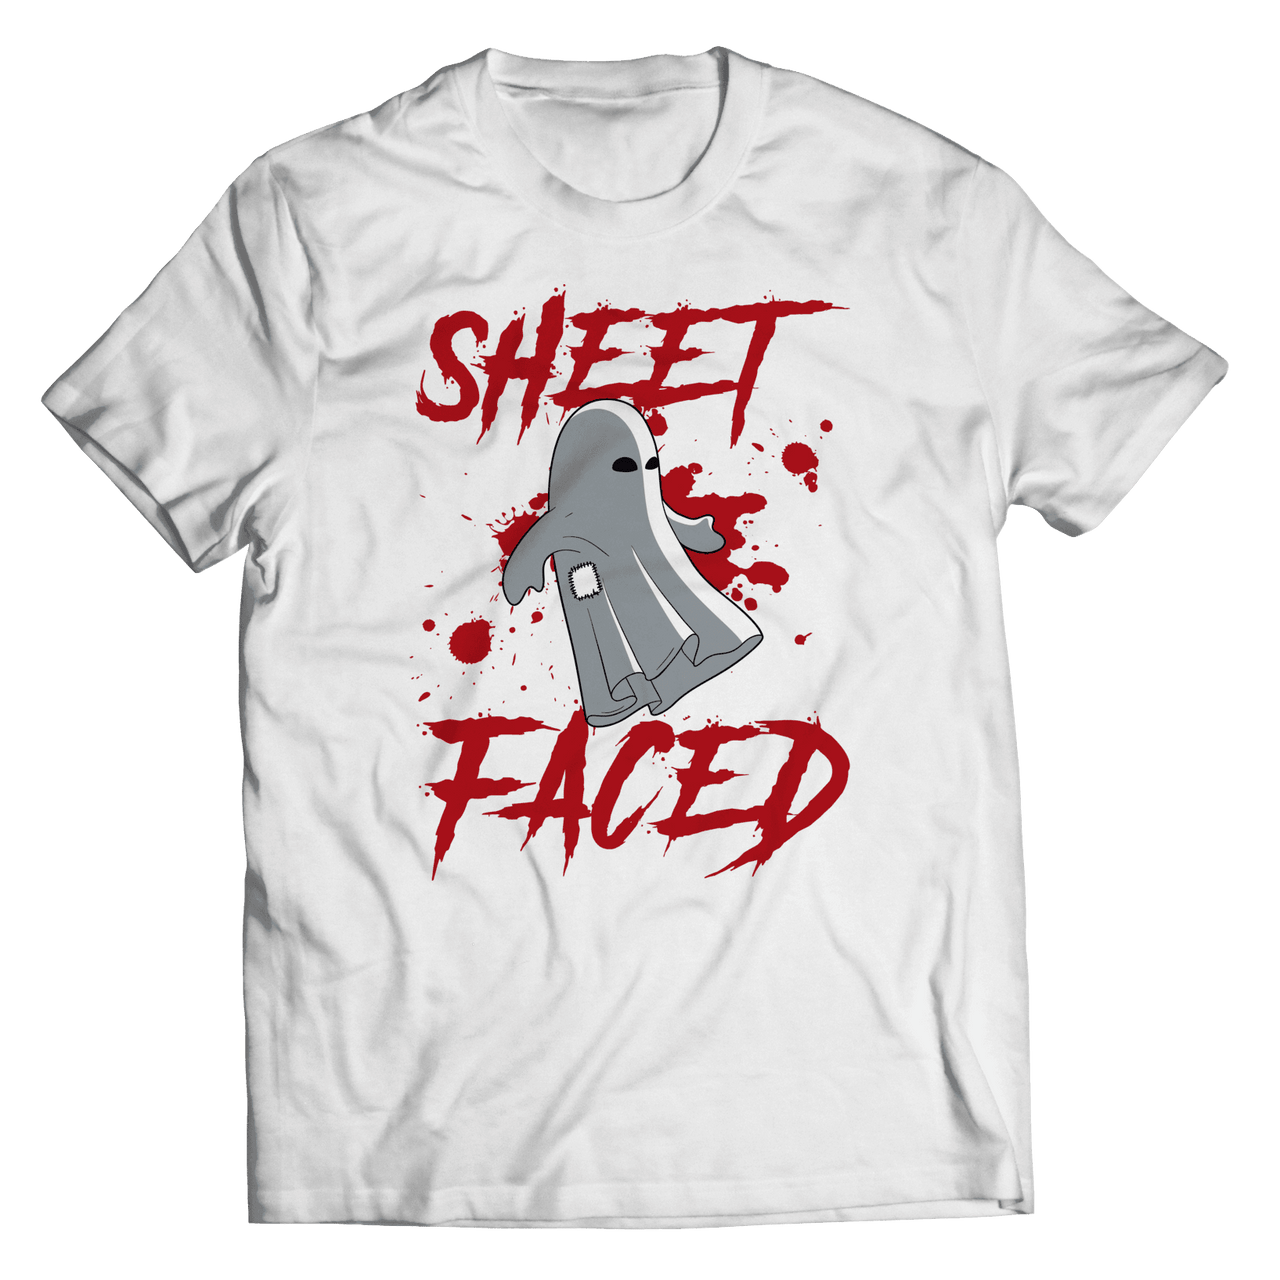 Sheet Faced Unisex T Shirt